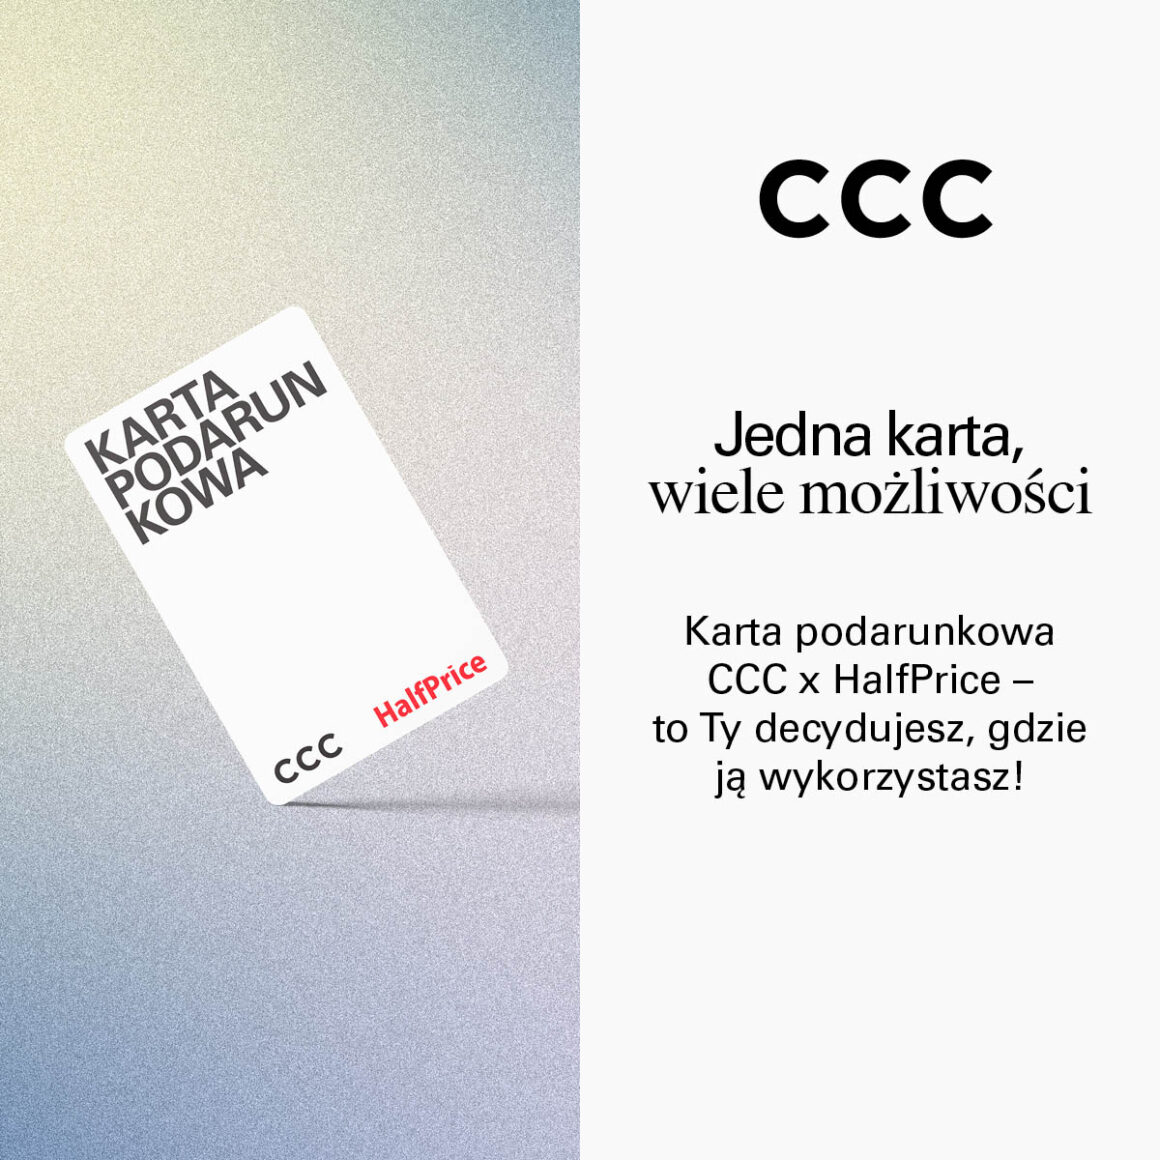 Karta podarunkowa CCC x HalfPrice